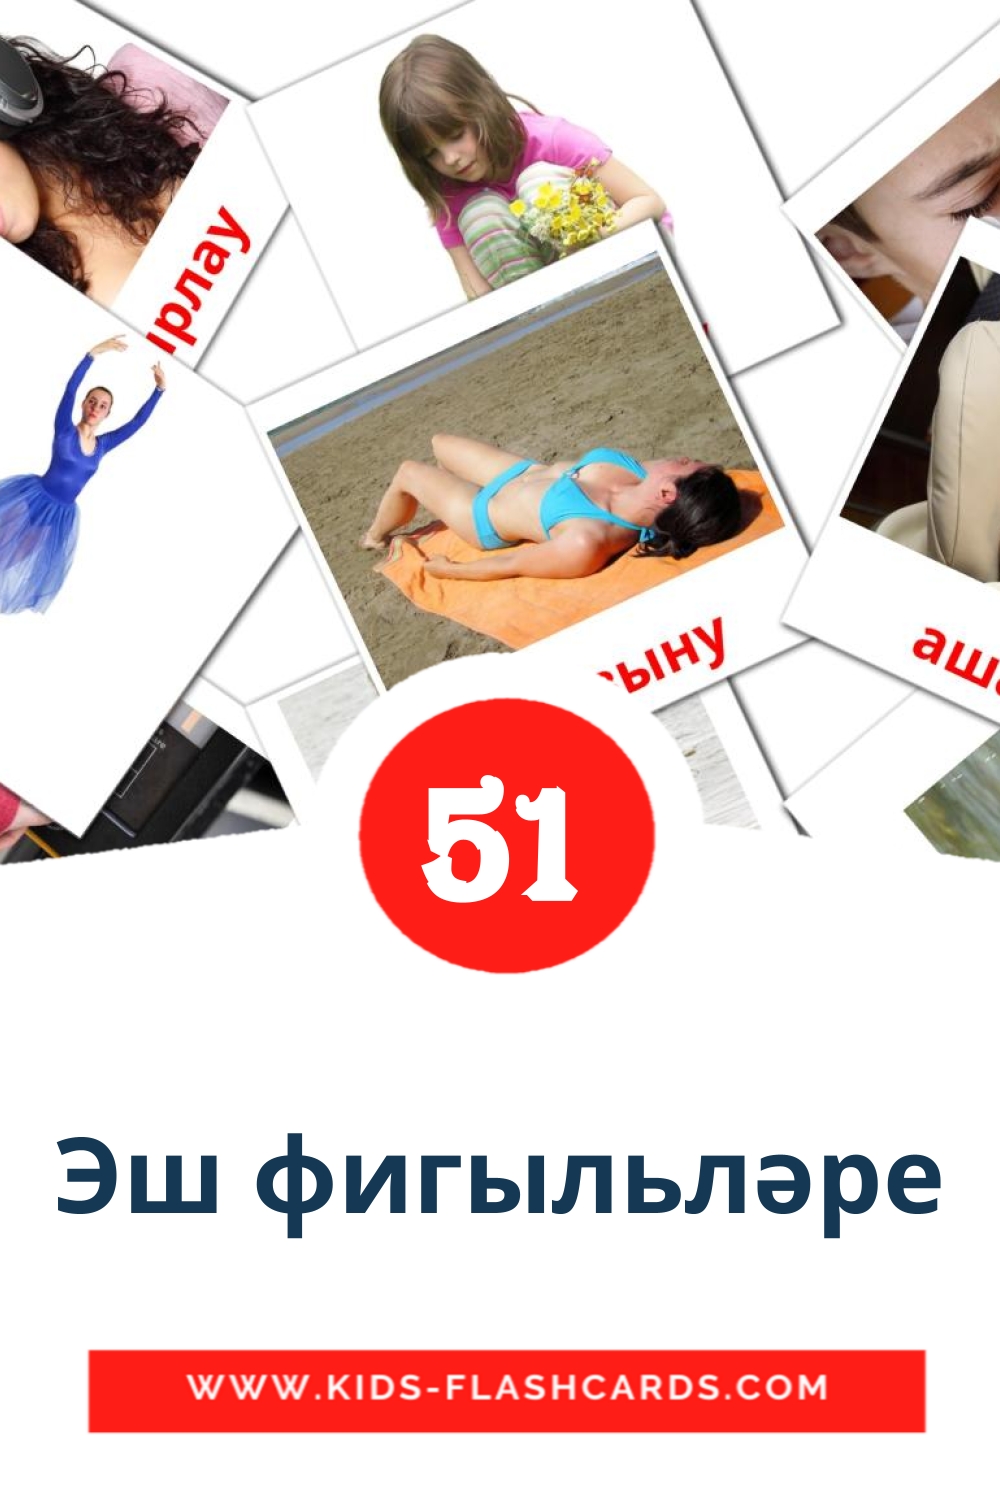 51 Эш фигыльләре fotokaarten voor kleuters in het tataars